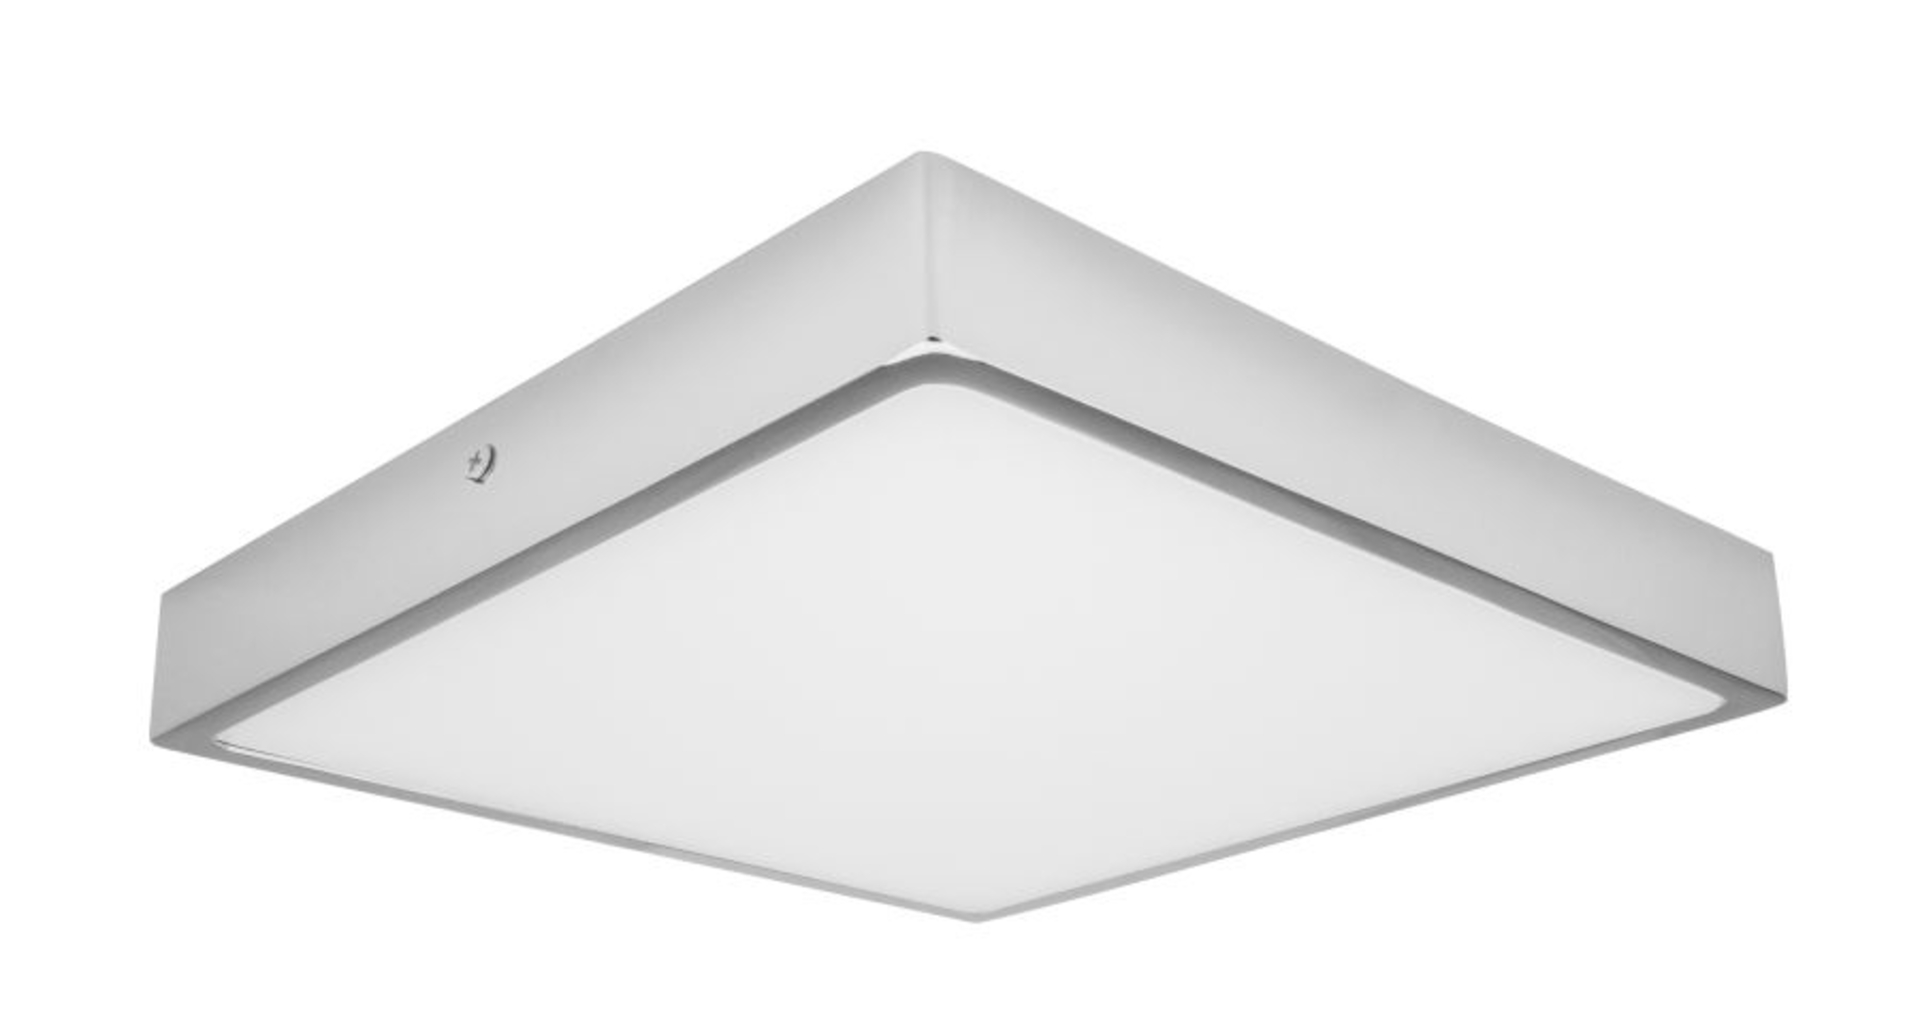 Palnas stropní LED svítidlo Egon čtverec 61003603